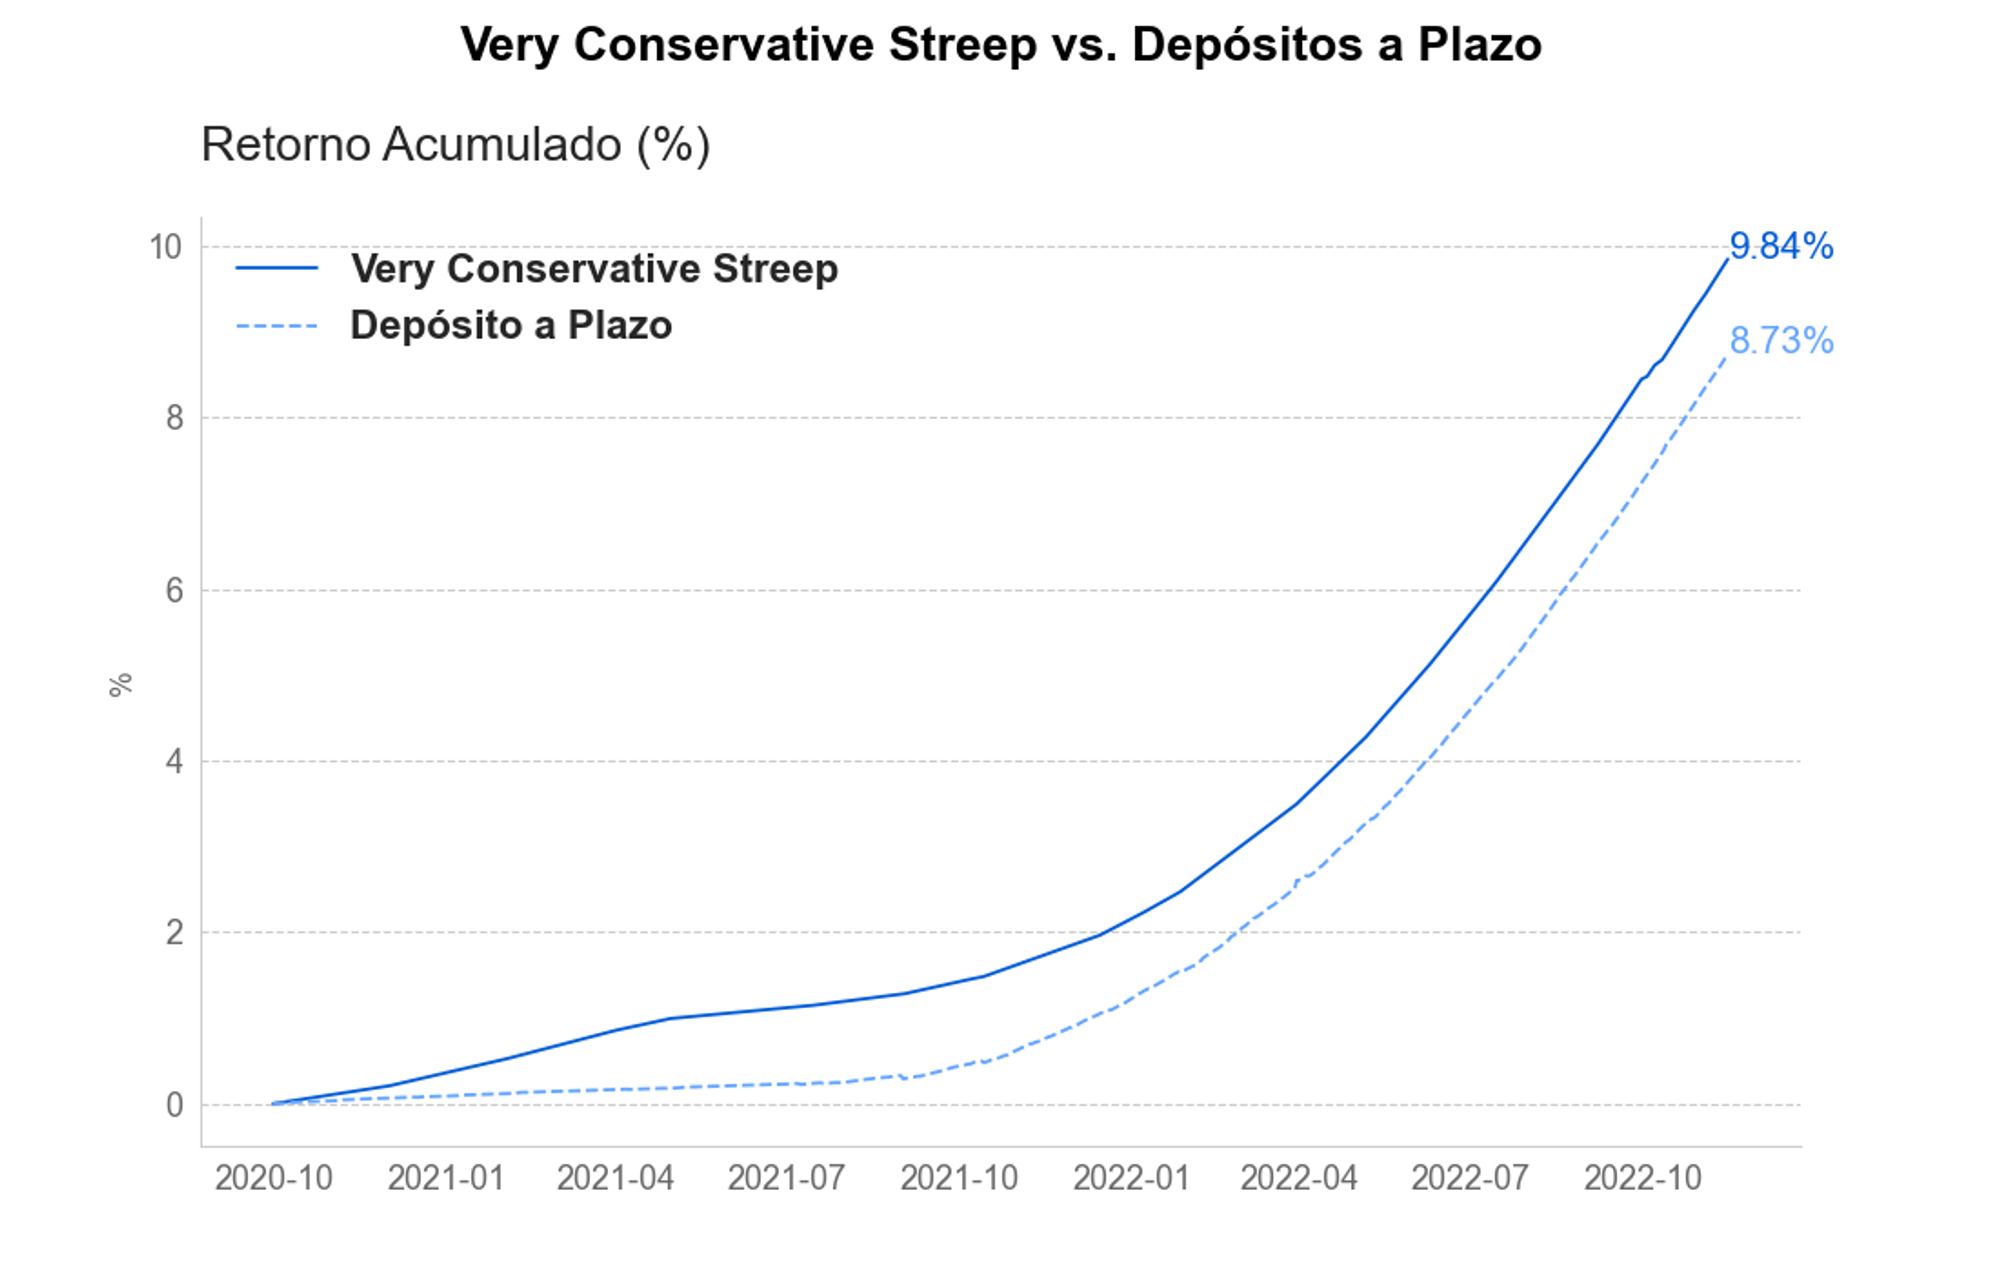 Retornos totales 2021 en pesos Very Conservative Streep